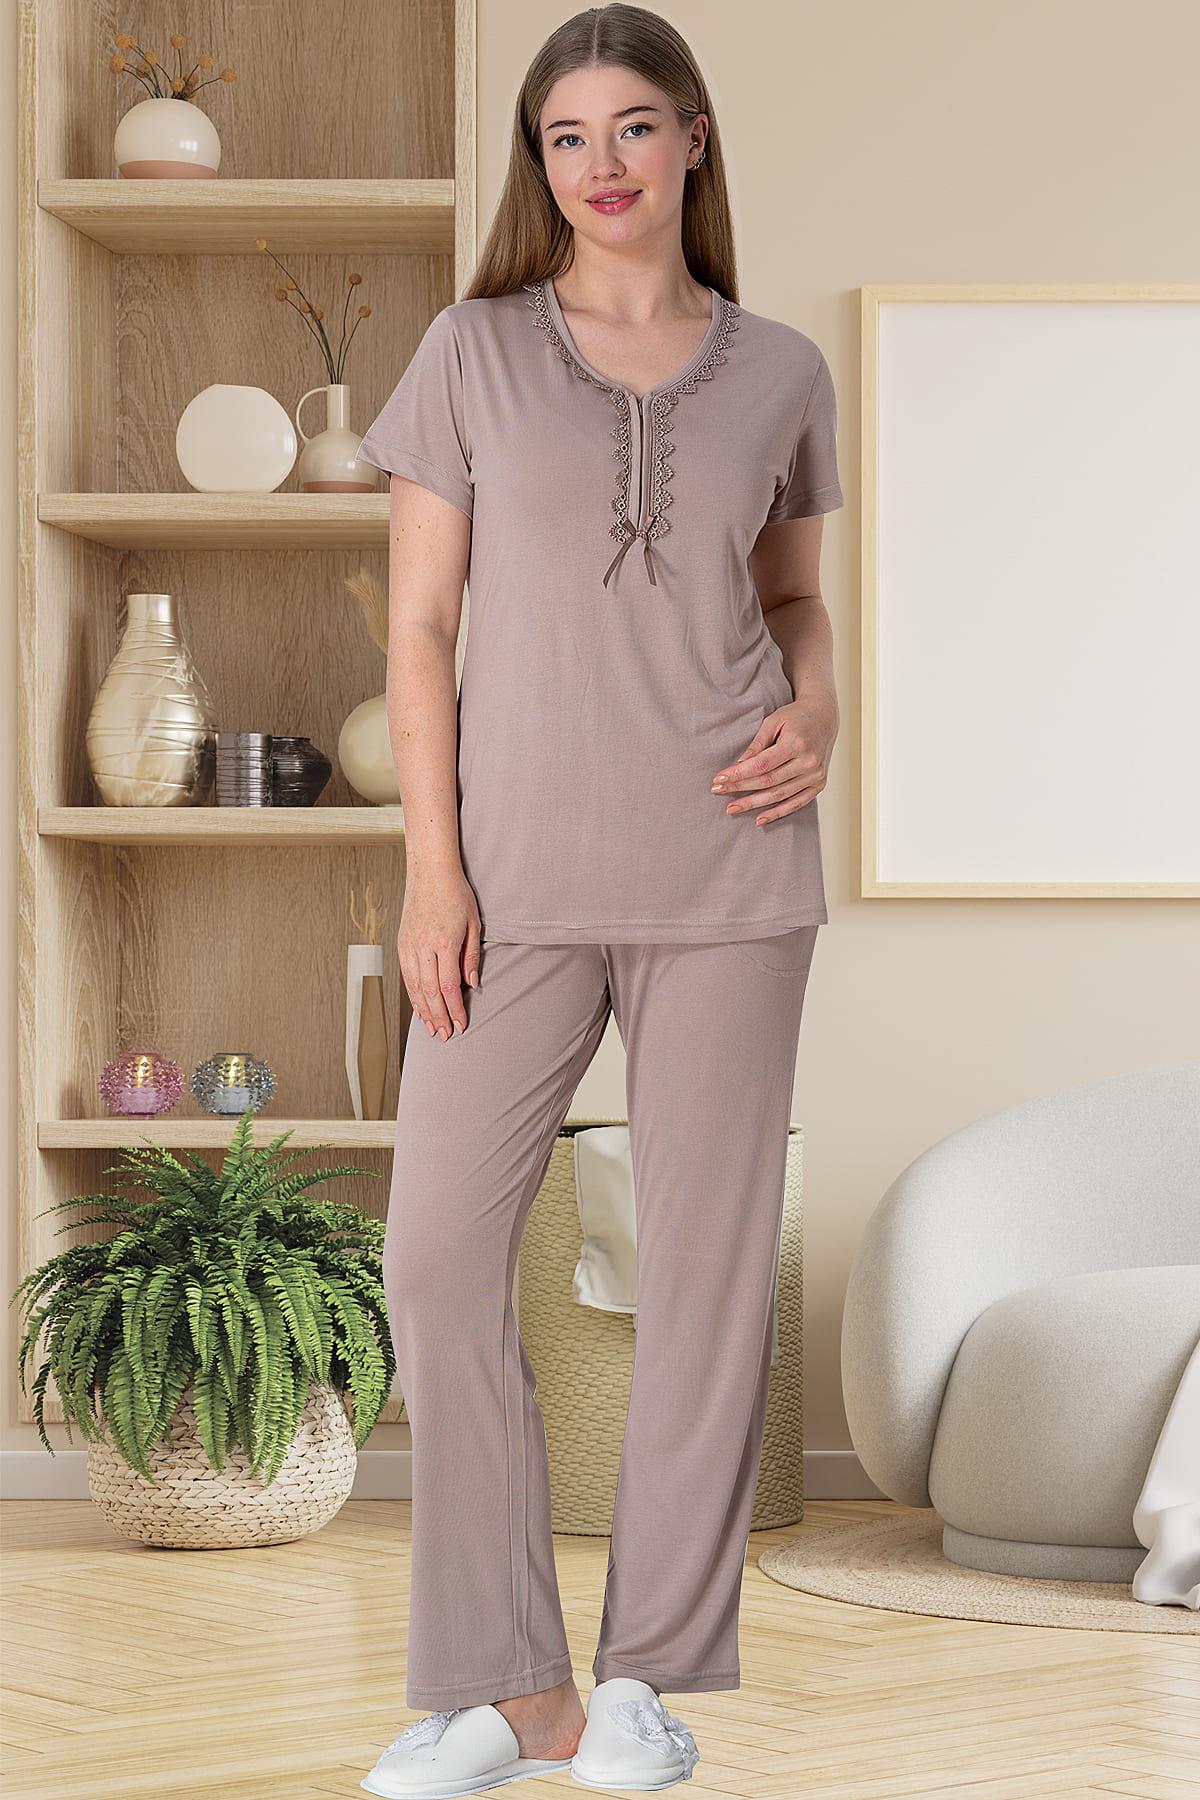 Mecit 5910 Vizon Büyük Beden Kadın Sabahlıklı Pijama Takımı | Mecit Pijama